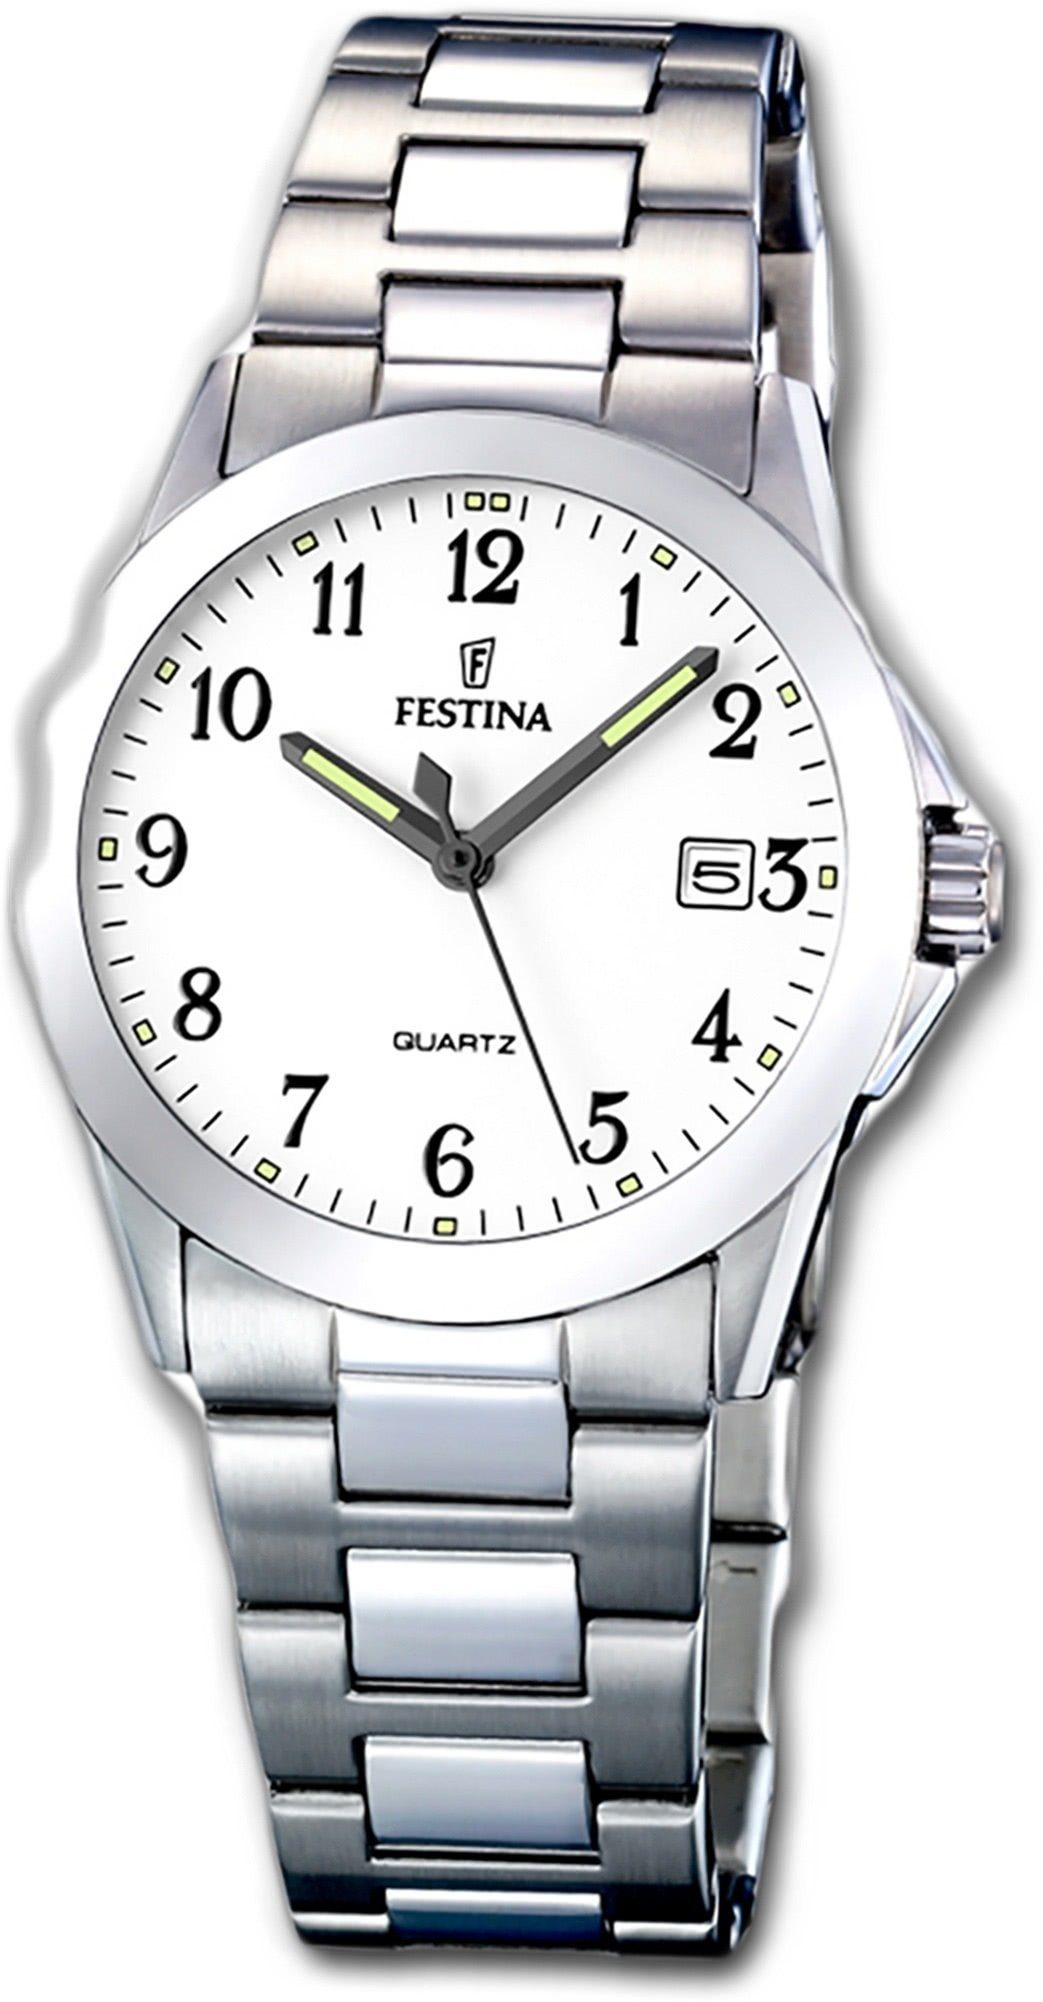 Festina Quarzuhr Festina Edelstahl Damen Uhr F16377/1, Damenuhr  Edelstahlarmband, rundes Gehäuse, klein (ca. 30mm) weiß